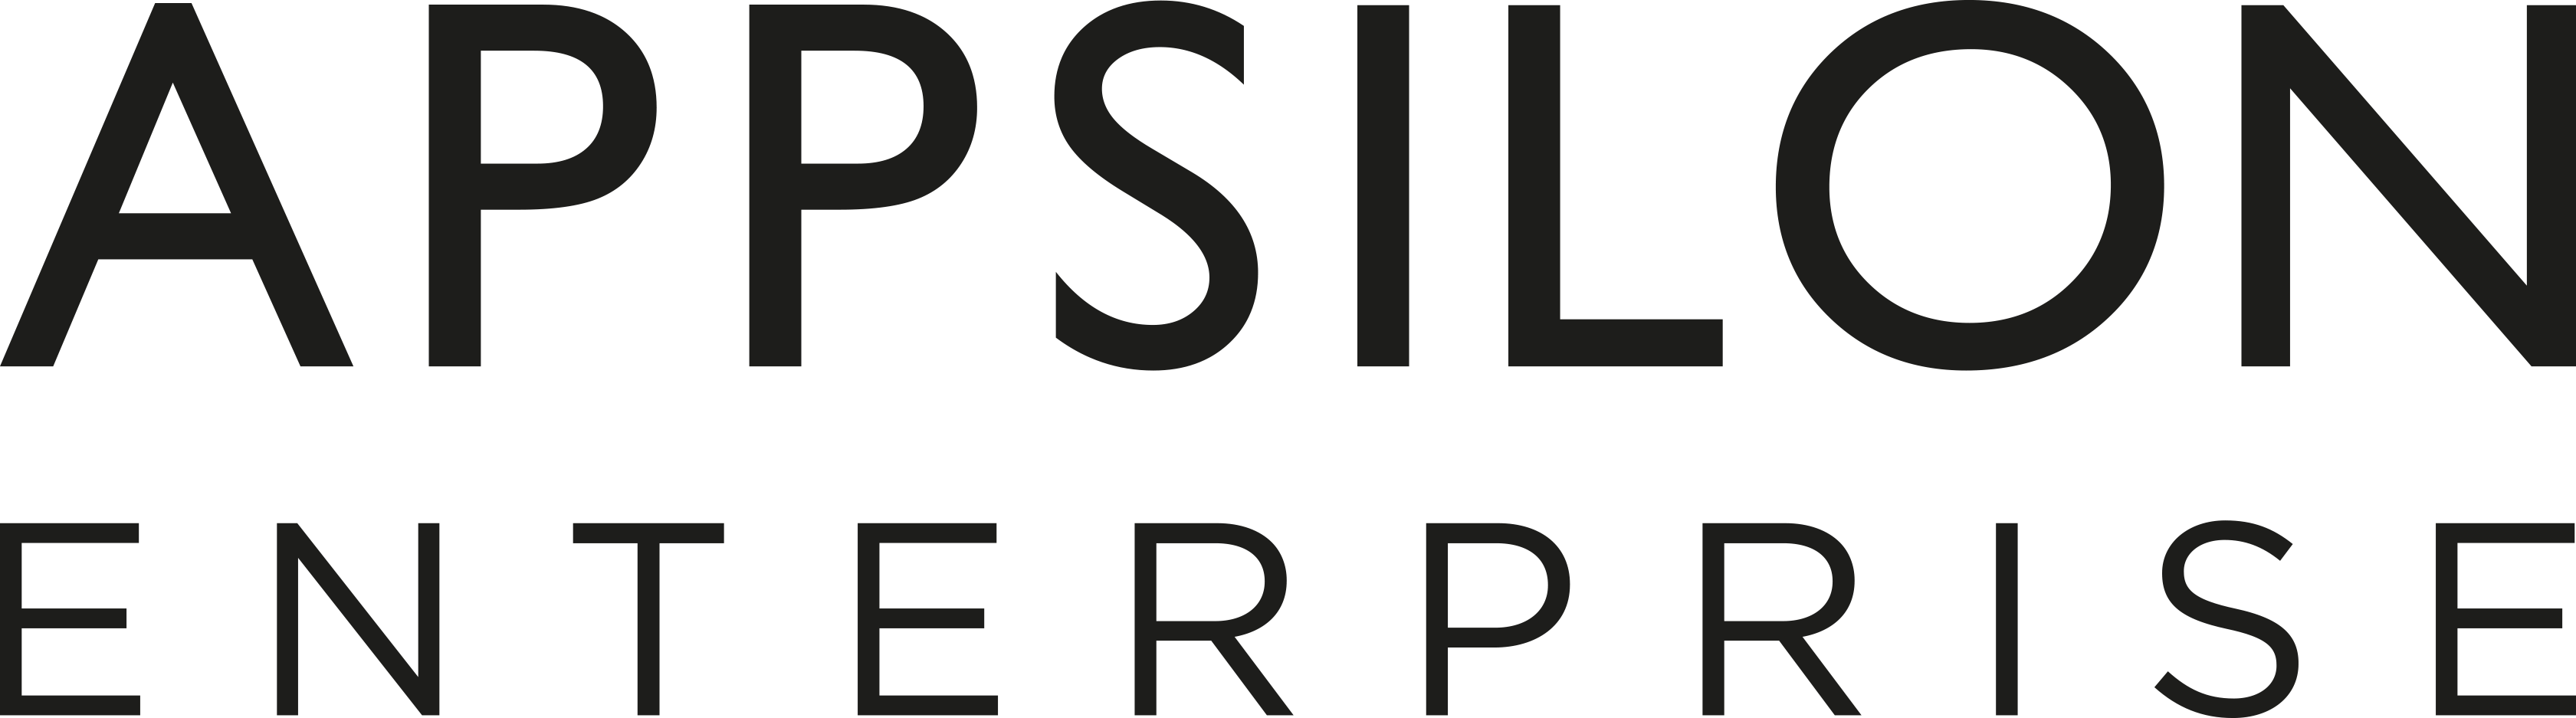 Appsilon Enterprise